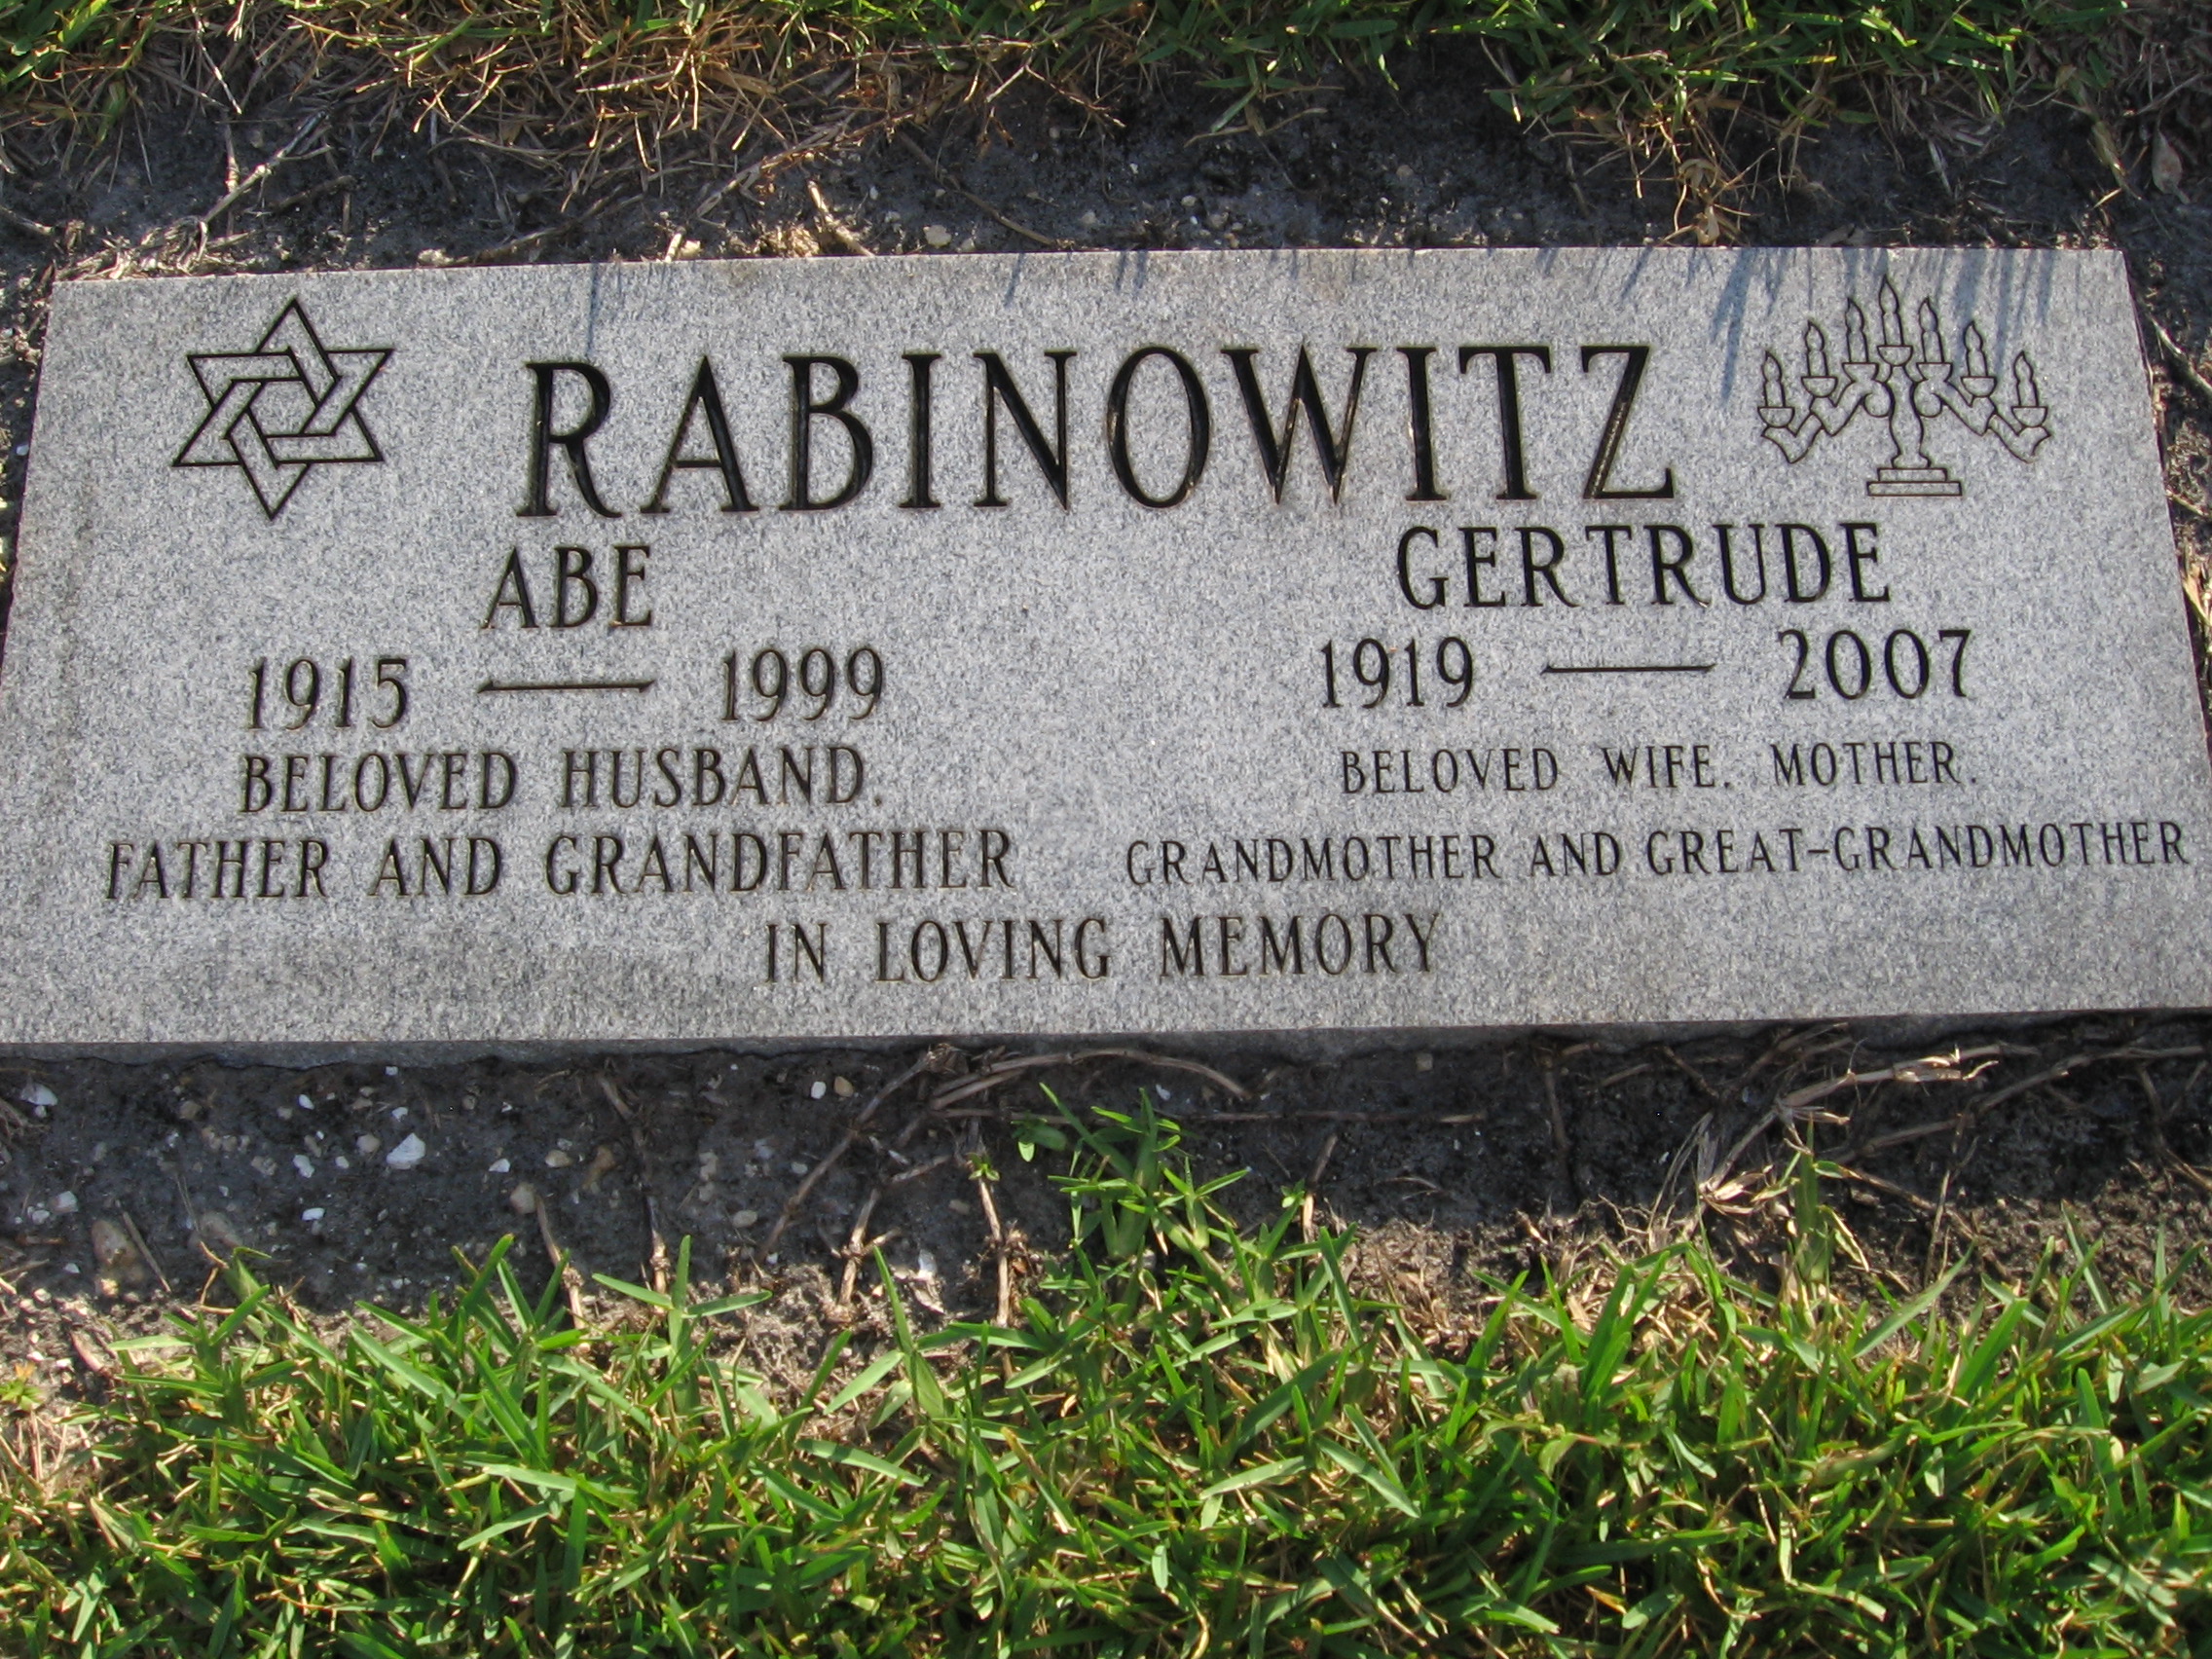 Gertrude Rabinowitz